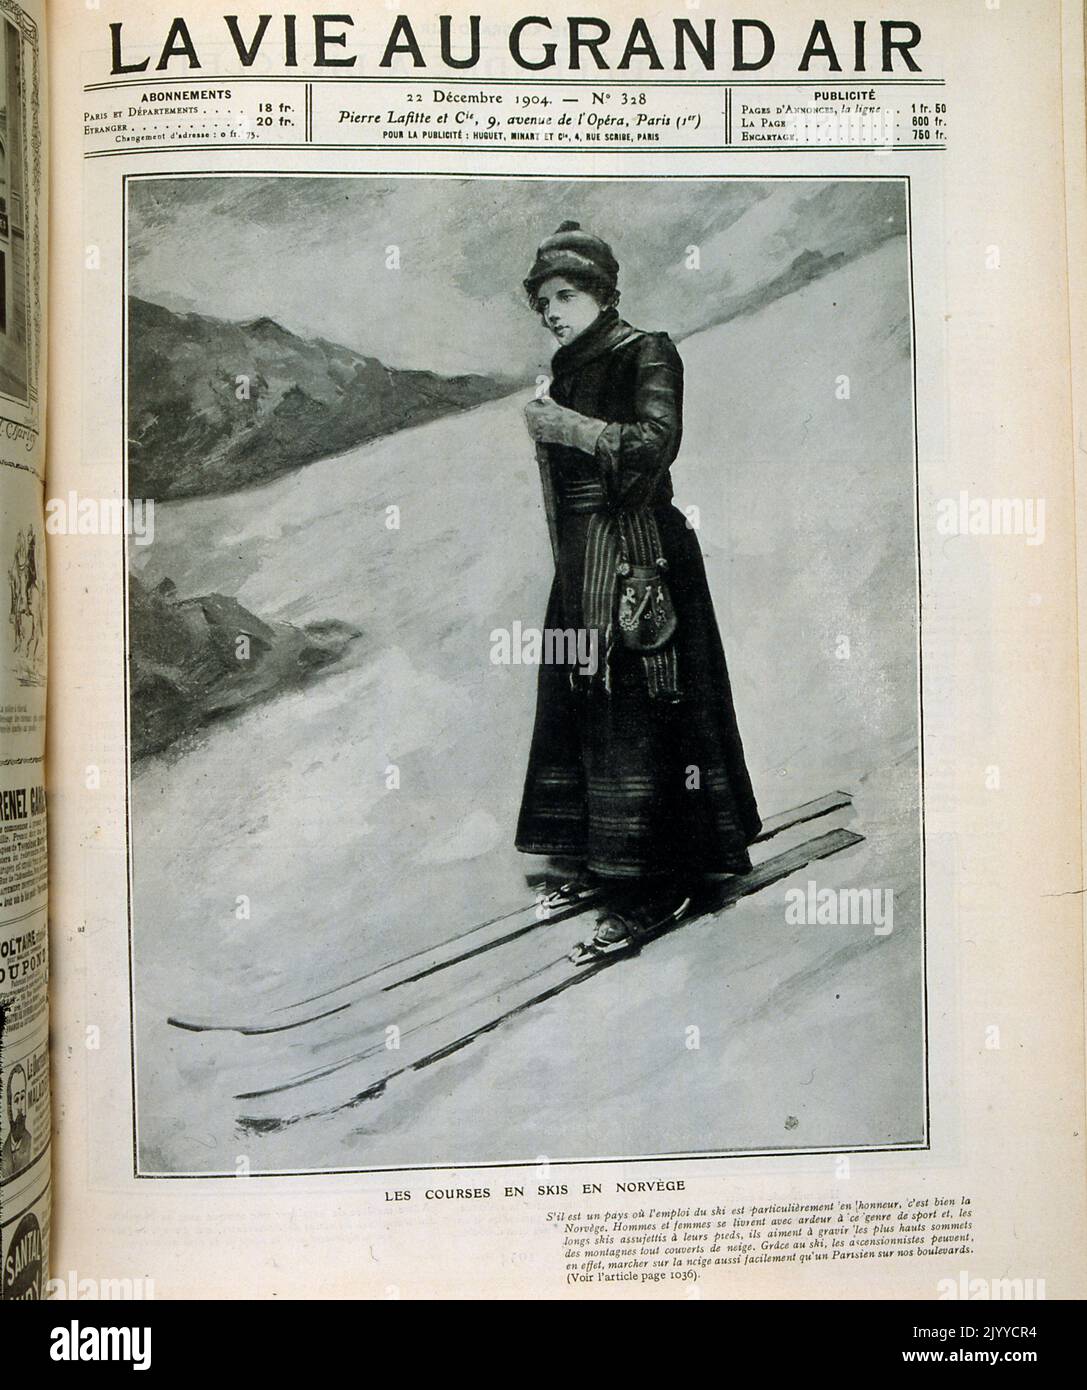 Foto im Inneren des Lifestyle-Magazins La Vie au Grand Air; Titelblatt mit einem Foto einer Dame im langen Mantel auf Skiern. Stockfoto